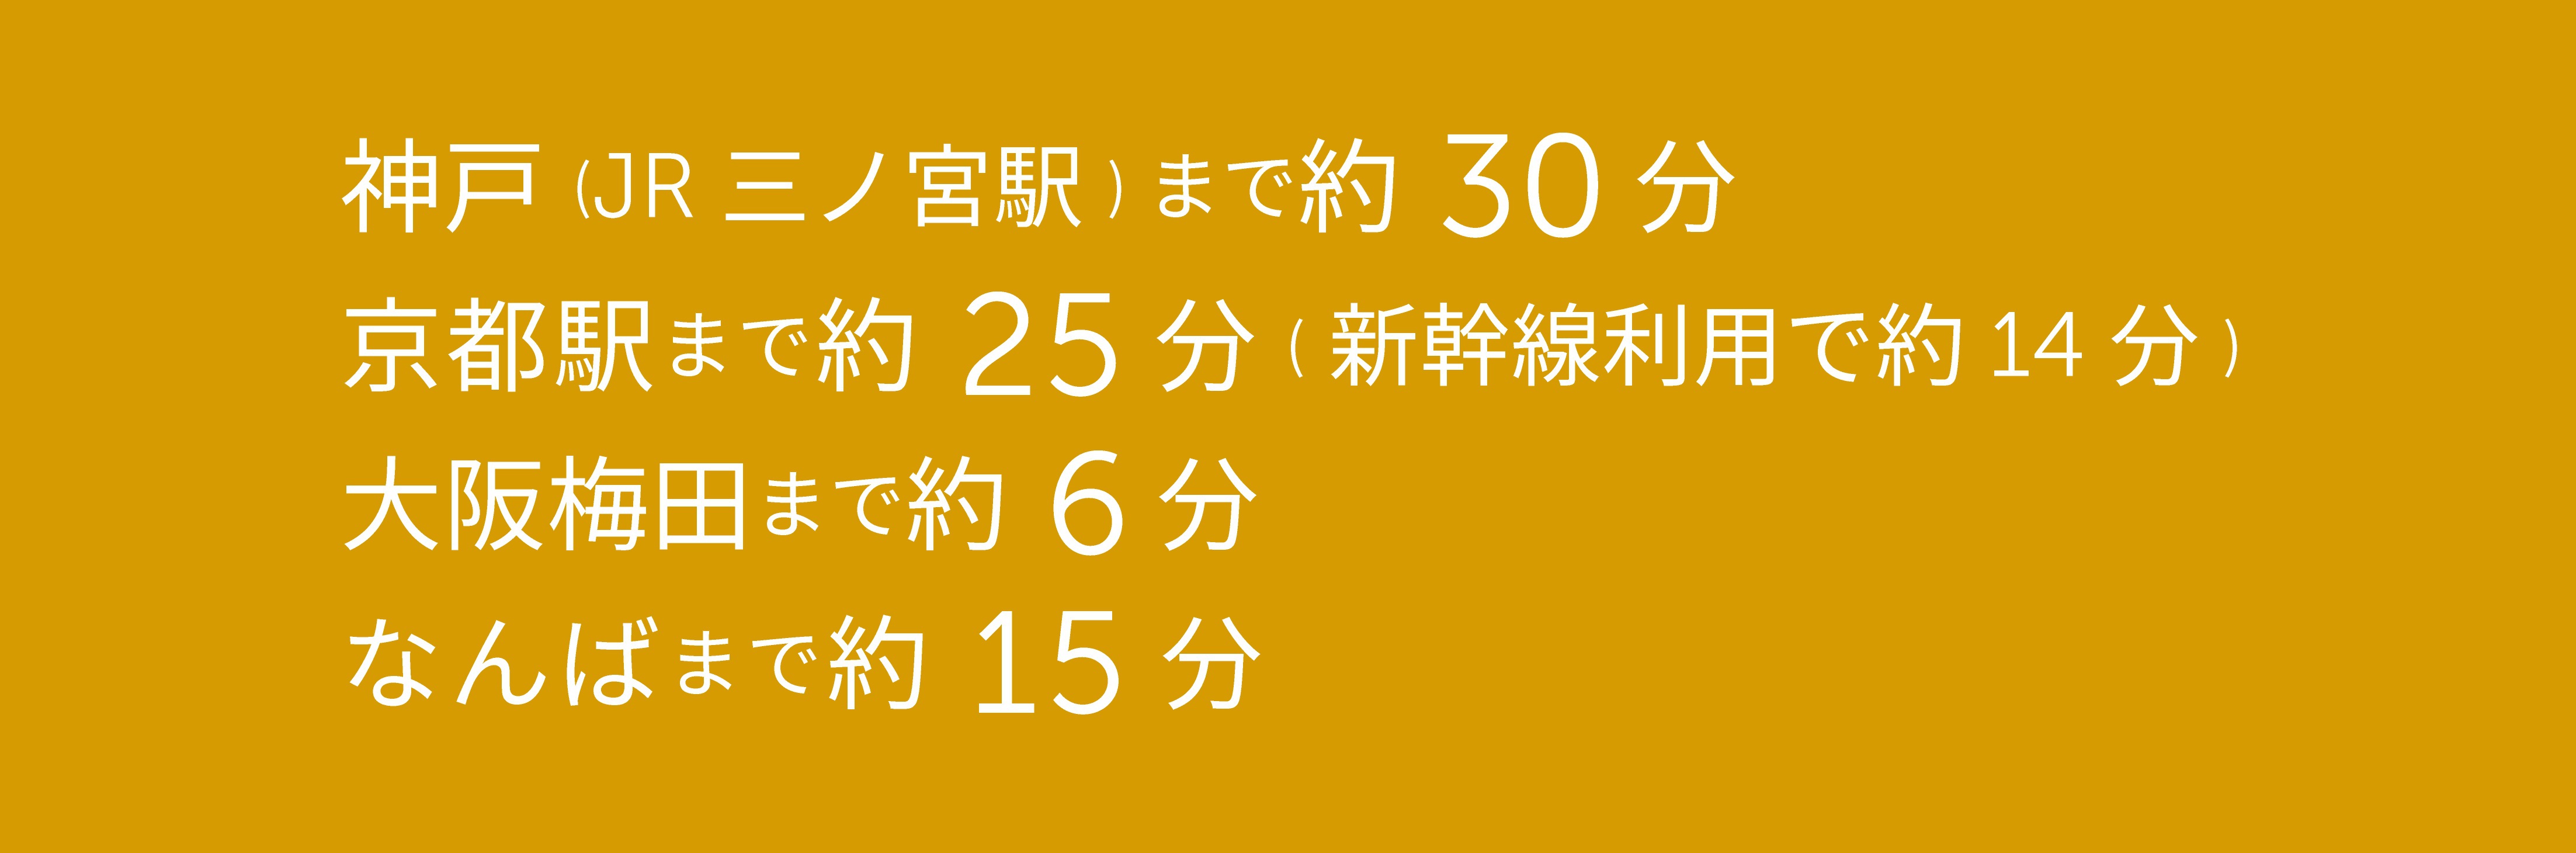 神戸（JR三ノ宮駅）まで29分、京都駅まで24分（新幹線利用で14分）、梅田まで6分、なんばまで15分